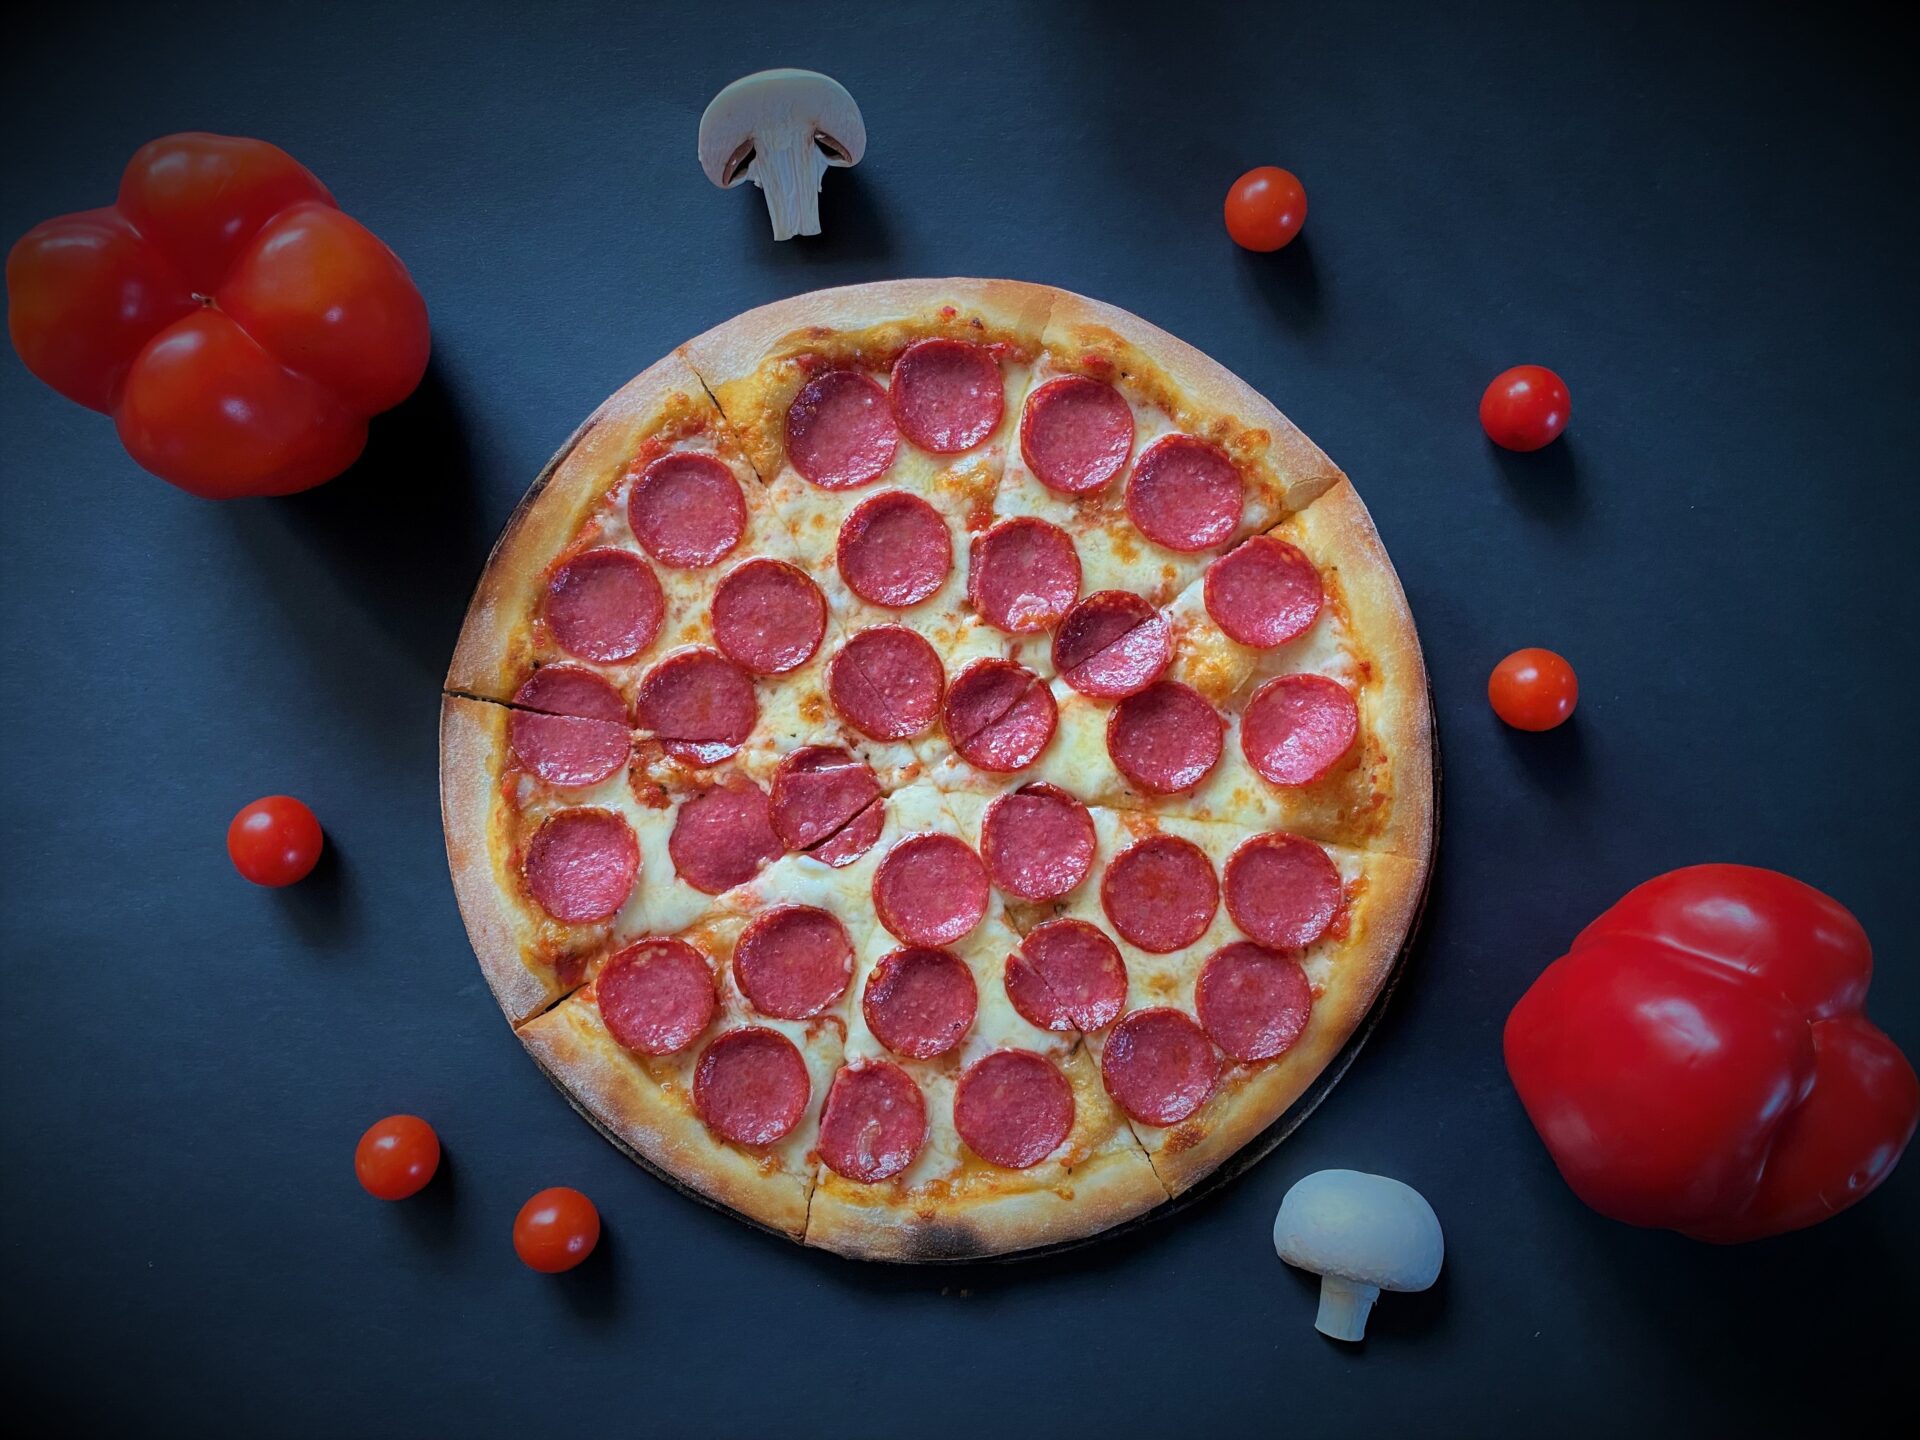 хорошая пицца отличная пицца пепперони и сыр на равные части фото 100